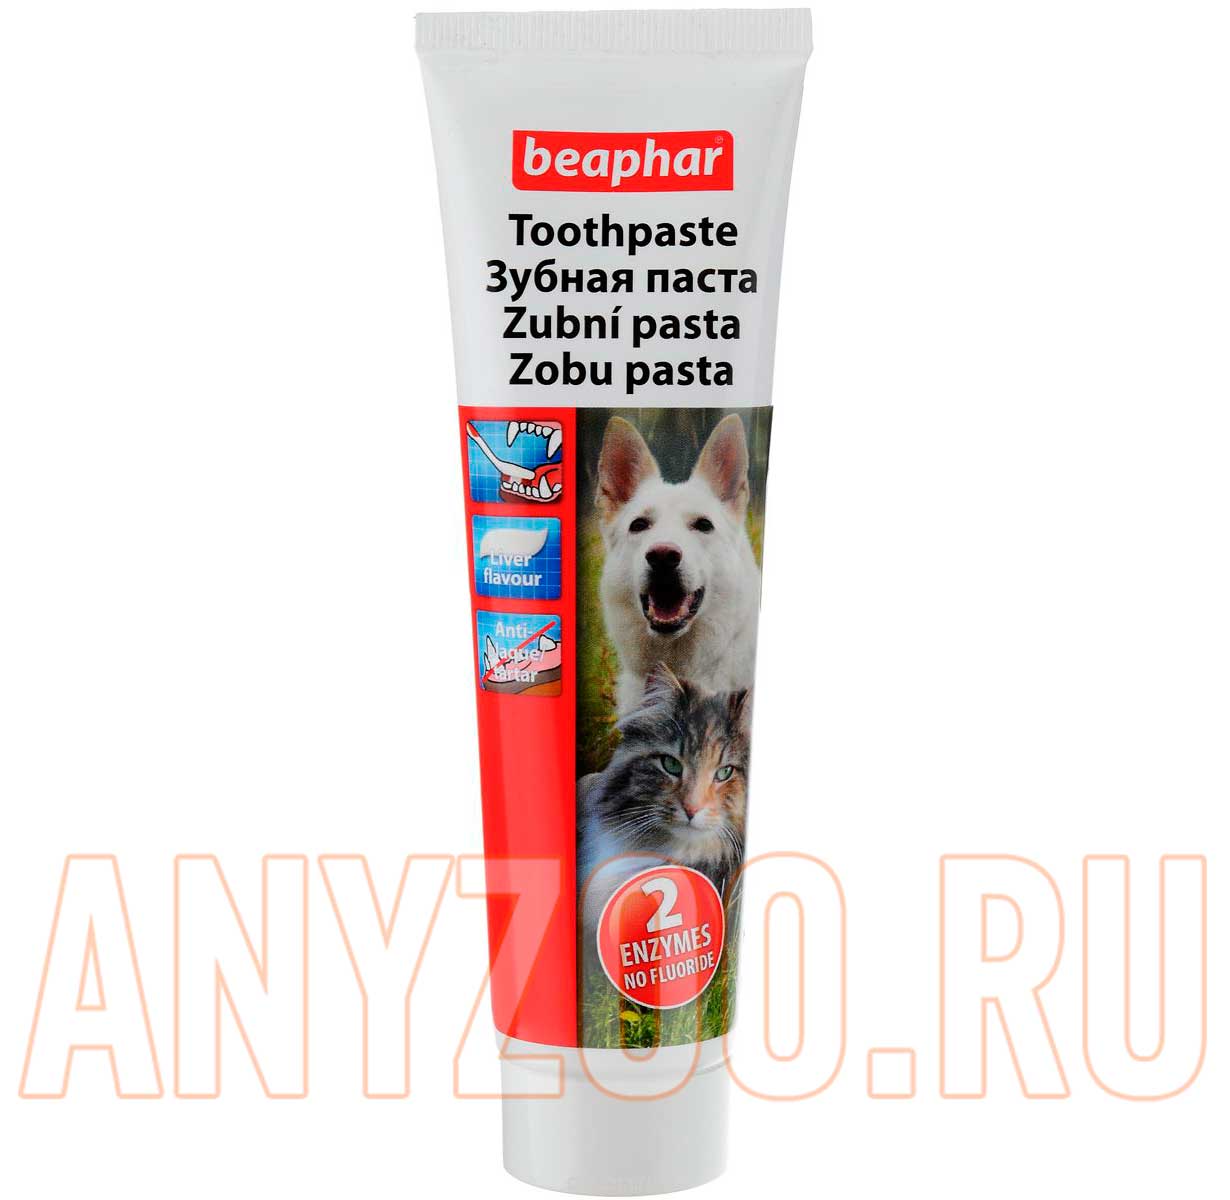 Купить для чистки зубов собаке. Beaphar зубная паста. Зубная паста Beaphar для собак и кошек со вкусом печени 100 г. Beaphar зубная паста для собак. Beaphar Fresh Breath Spray.